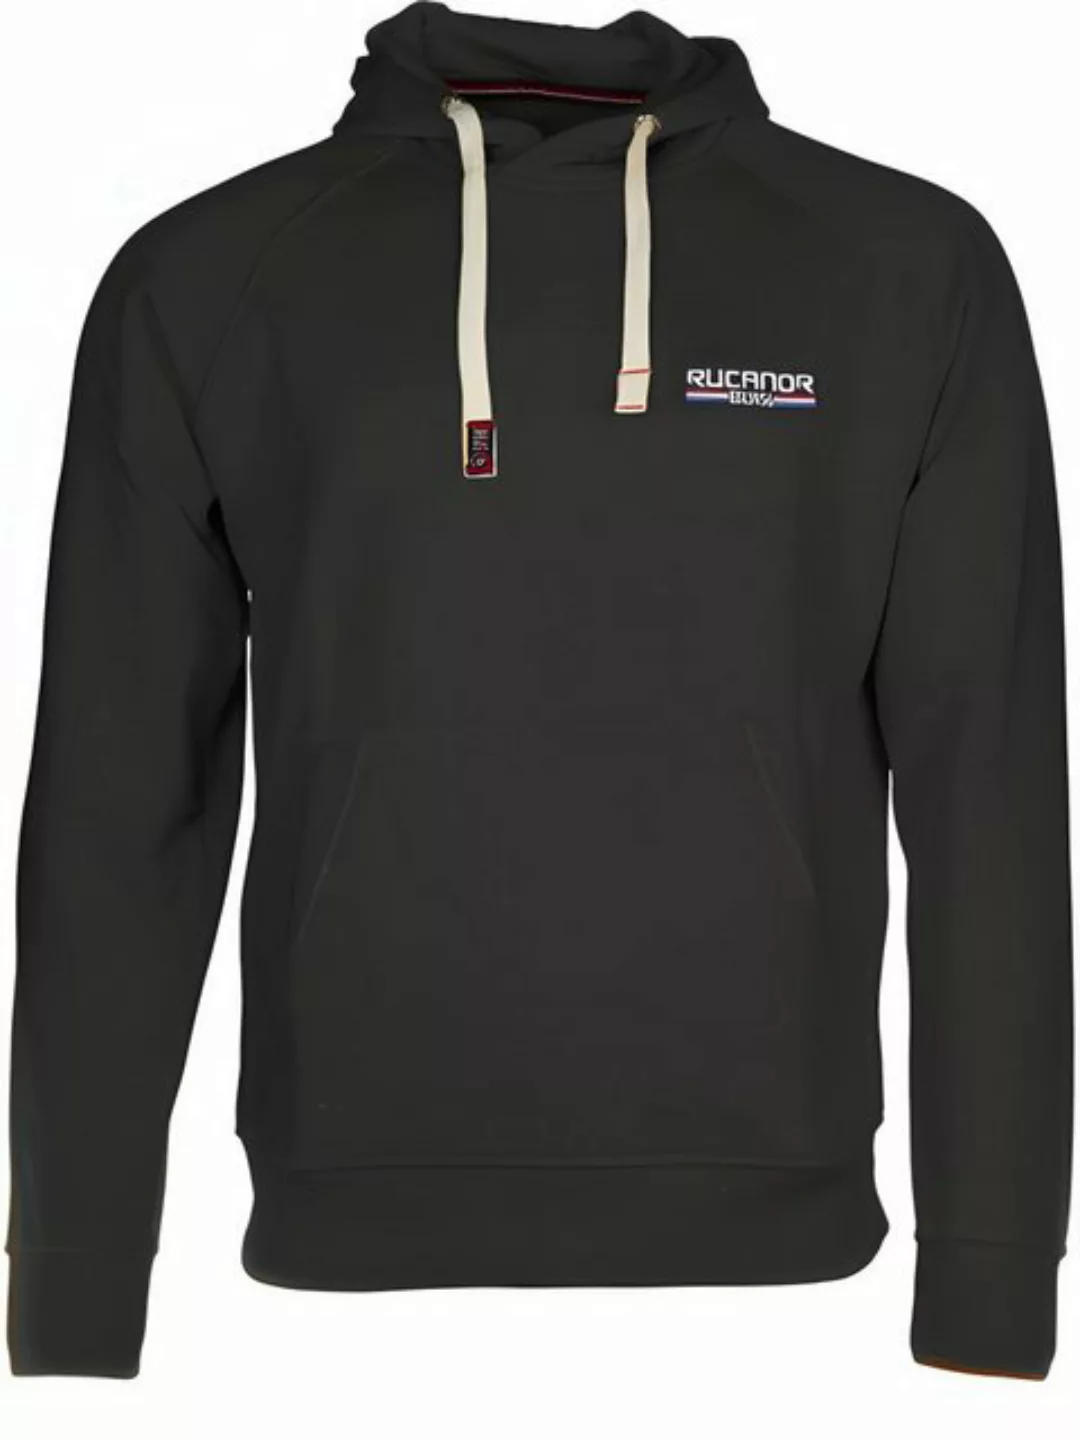 Rucanor Sweatjacke Sydney sweatshirt mit Kapuze schwarz Größe L günstig online kaufen